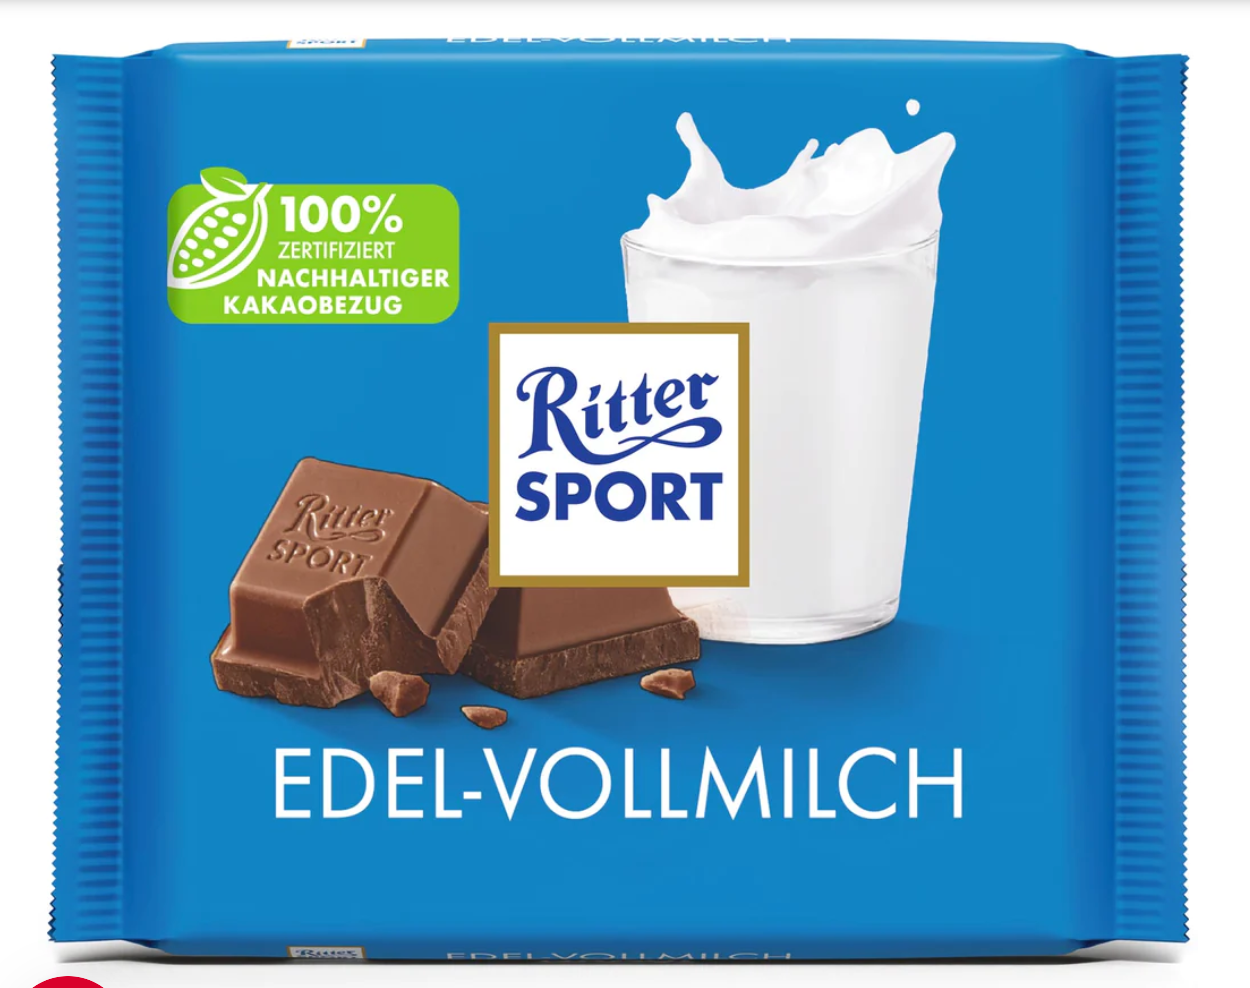 Ritter Sport premium whole milk 12x100g (Edel-Vollmilch)